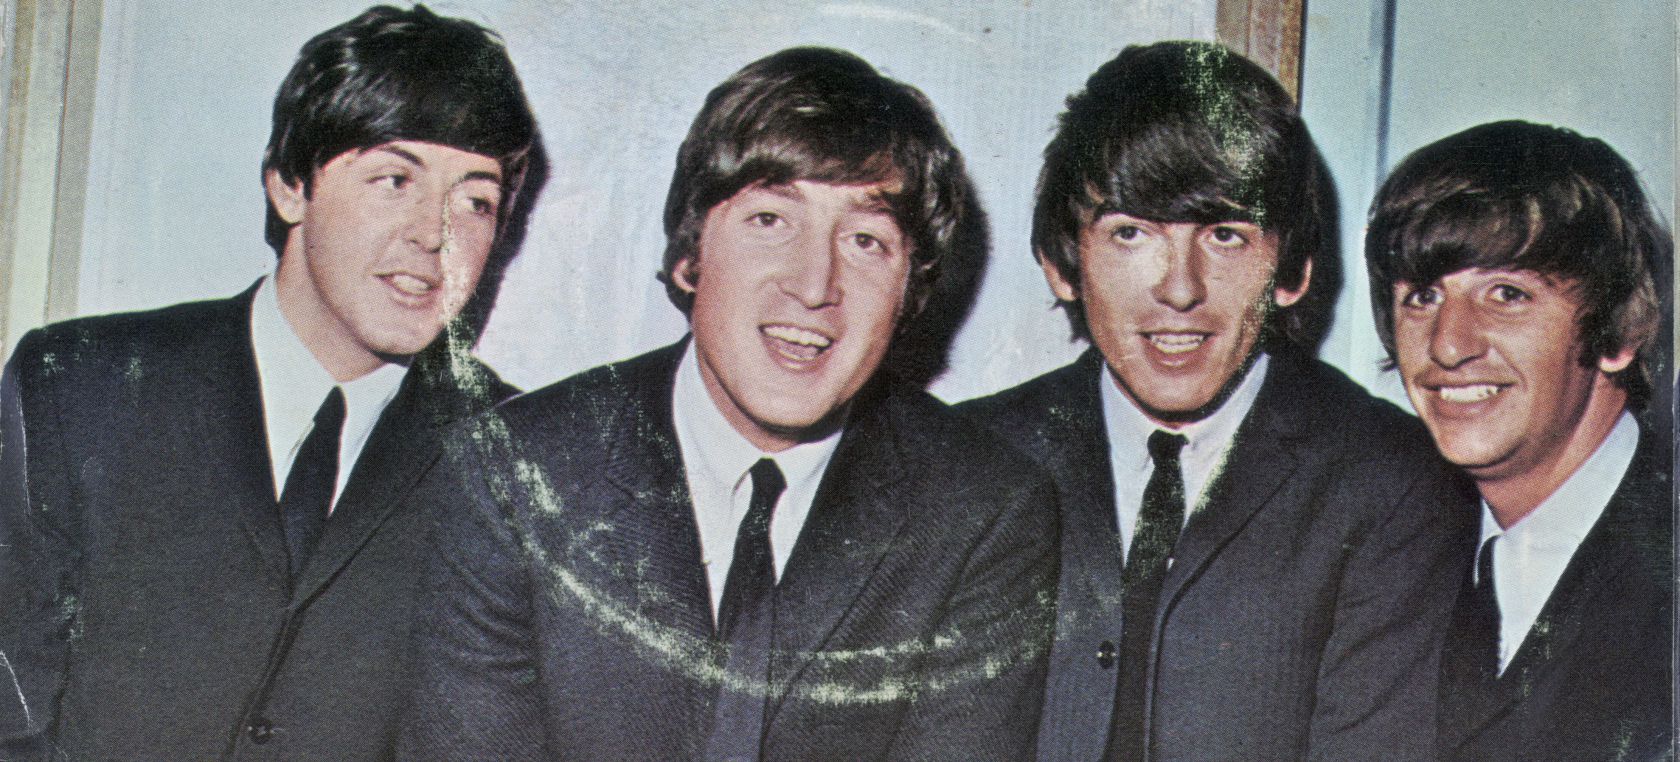 Historia de la ‘portada del carnicero’ de The Beatles: “¿Qué demonios es esto?”